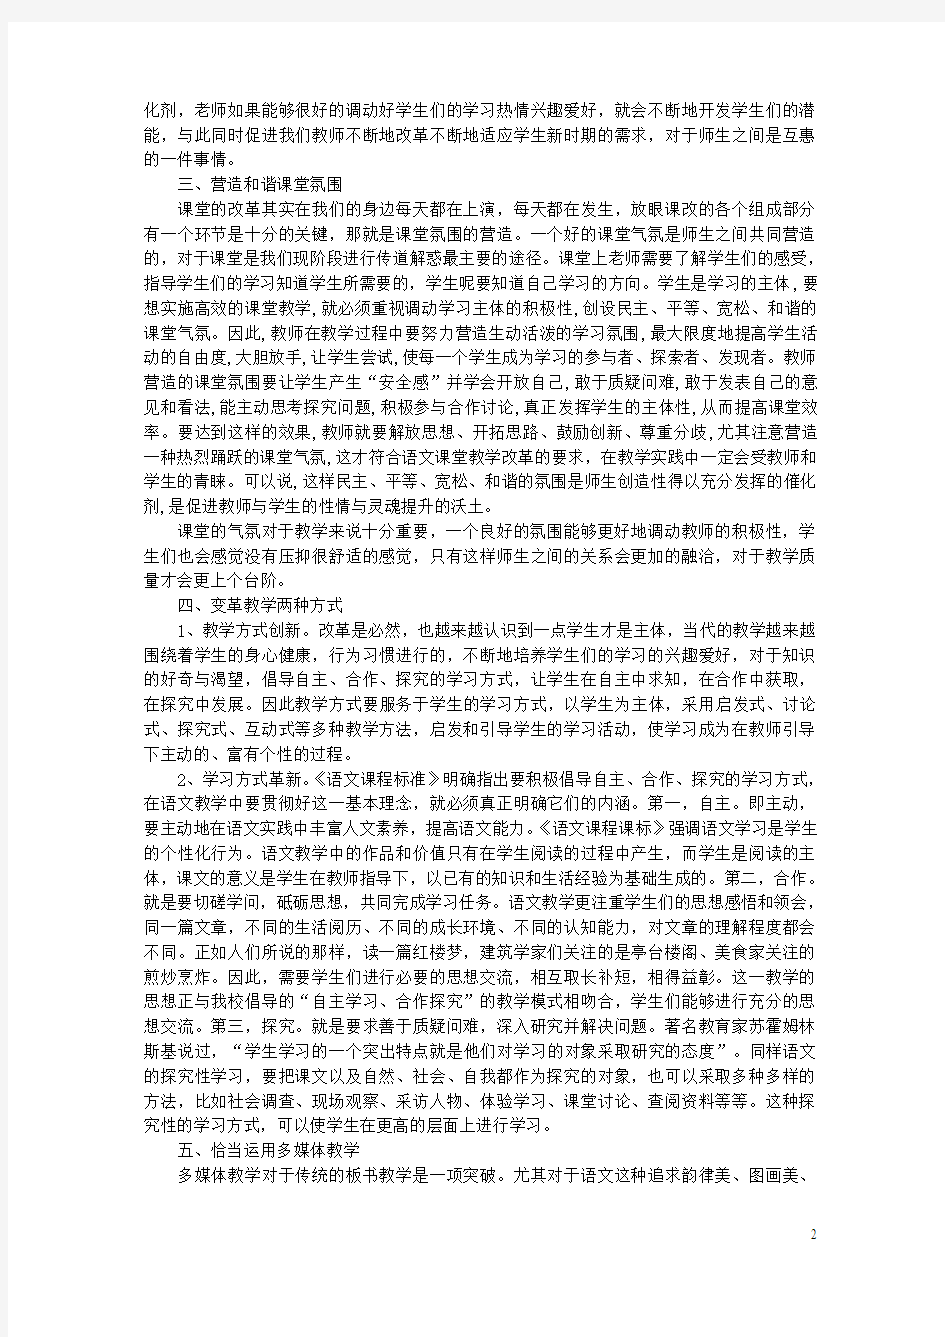 初中语文教学论文 如何营造初中语文高效课堂(1)